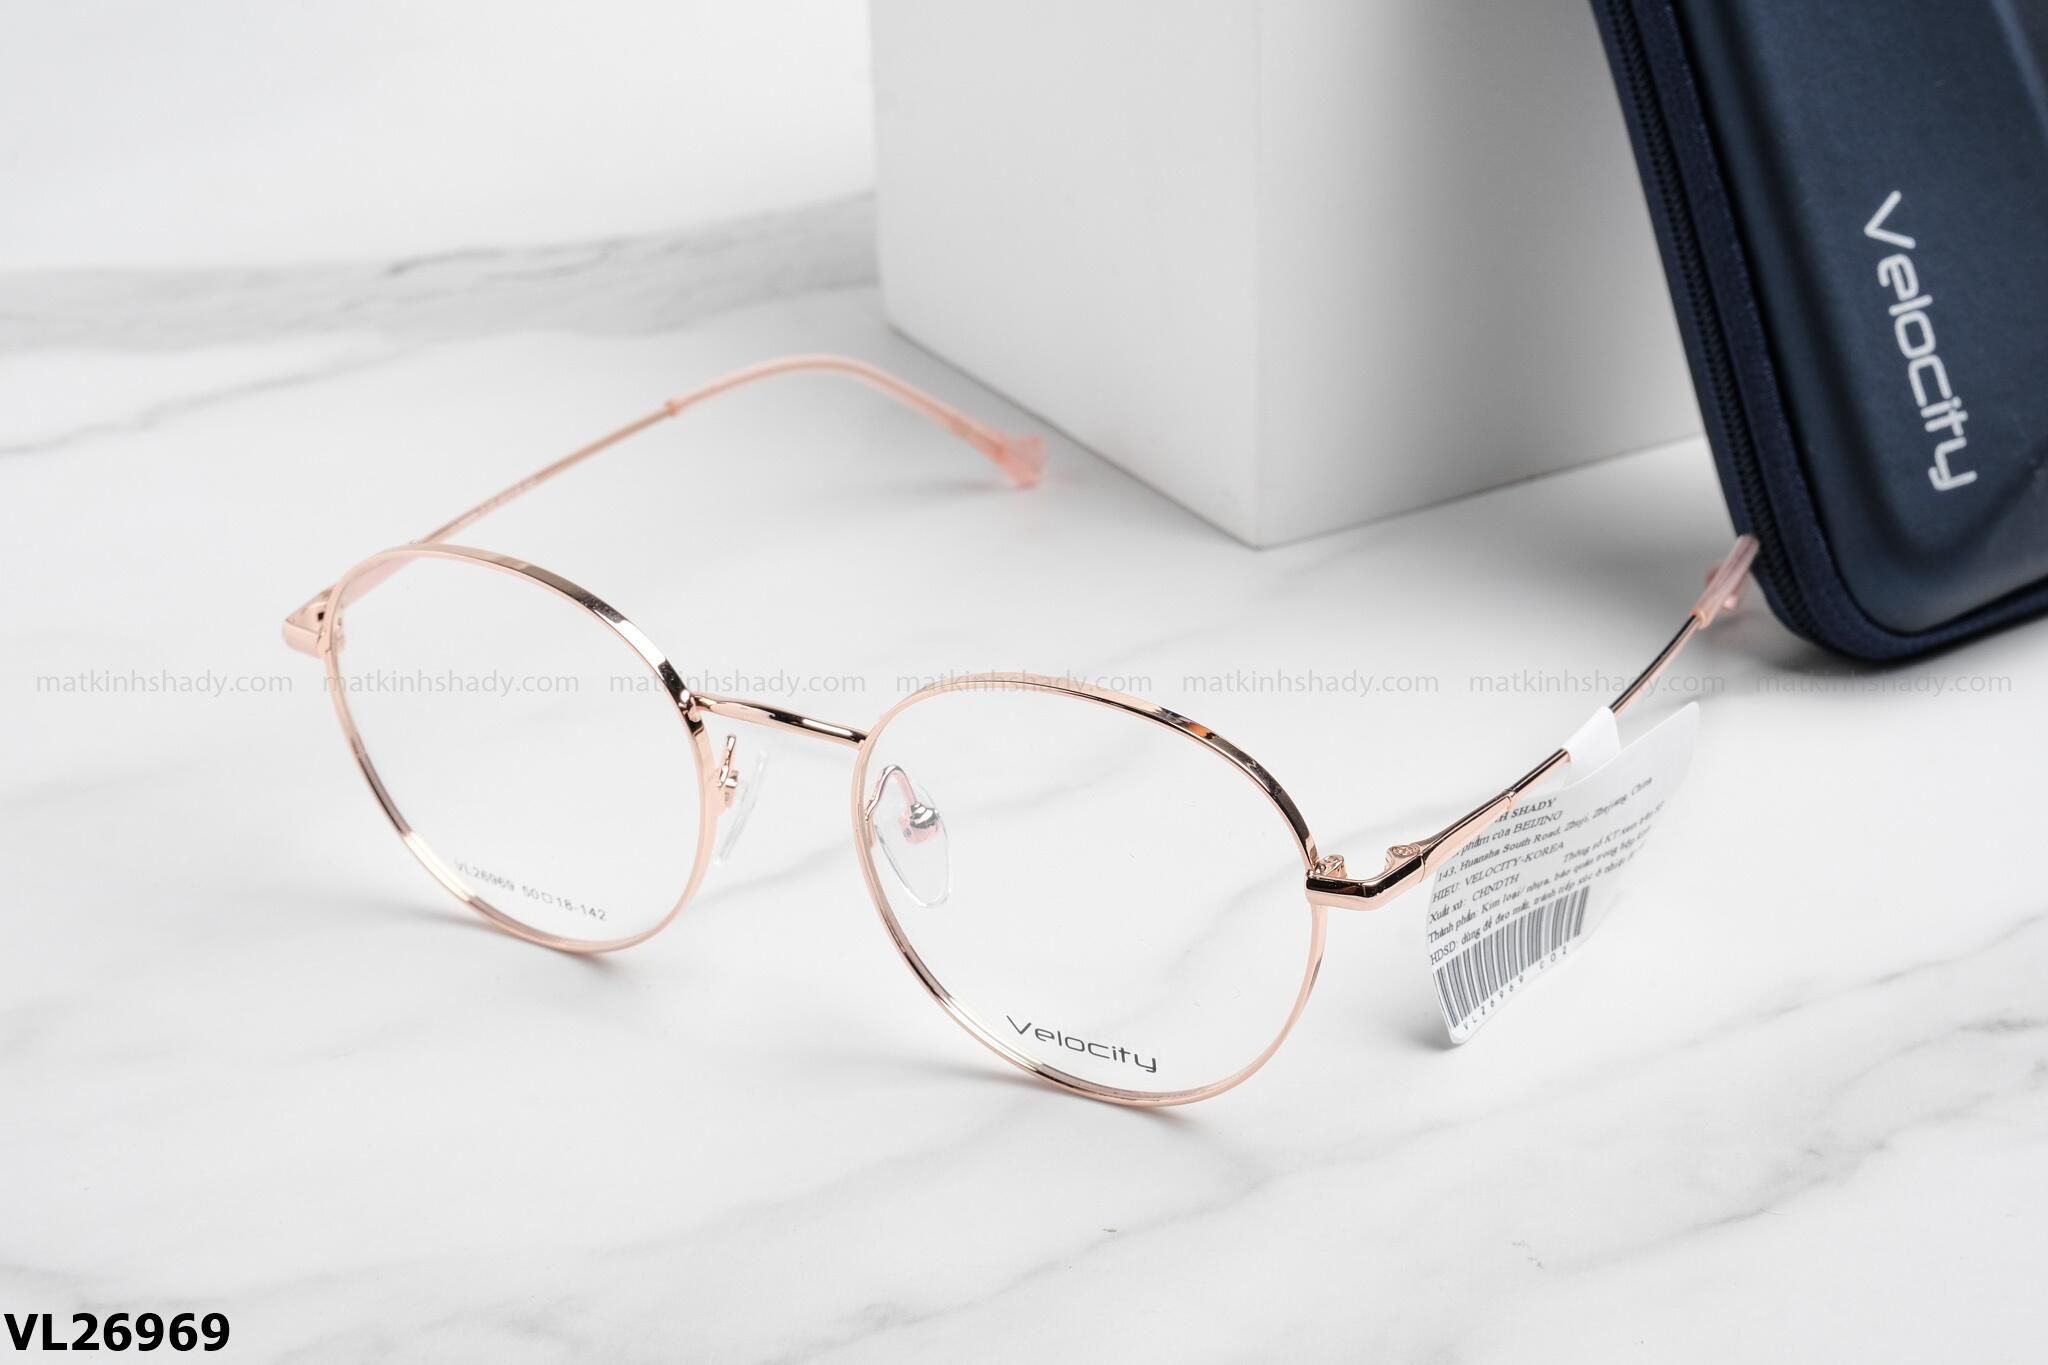  Velocity Eyewear - Glasses - VL26969 